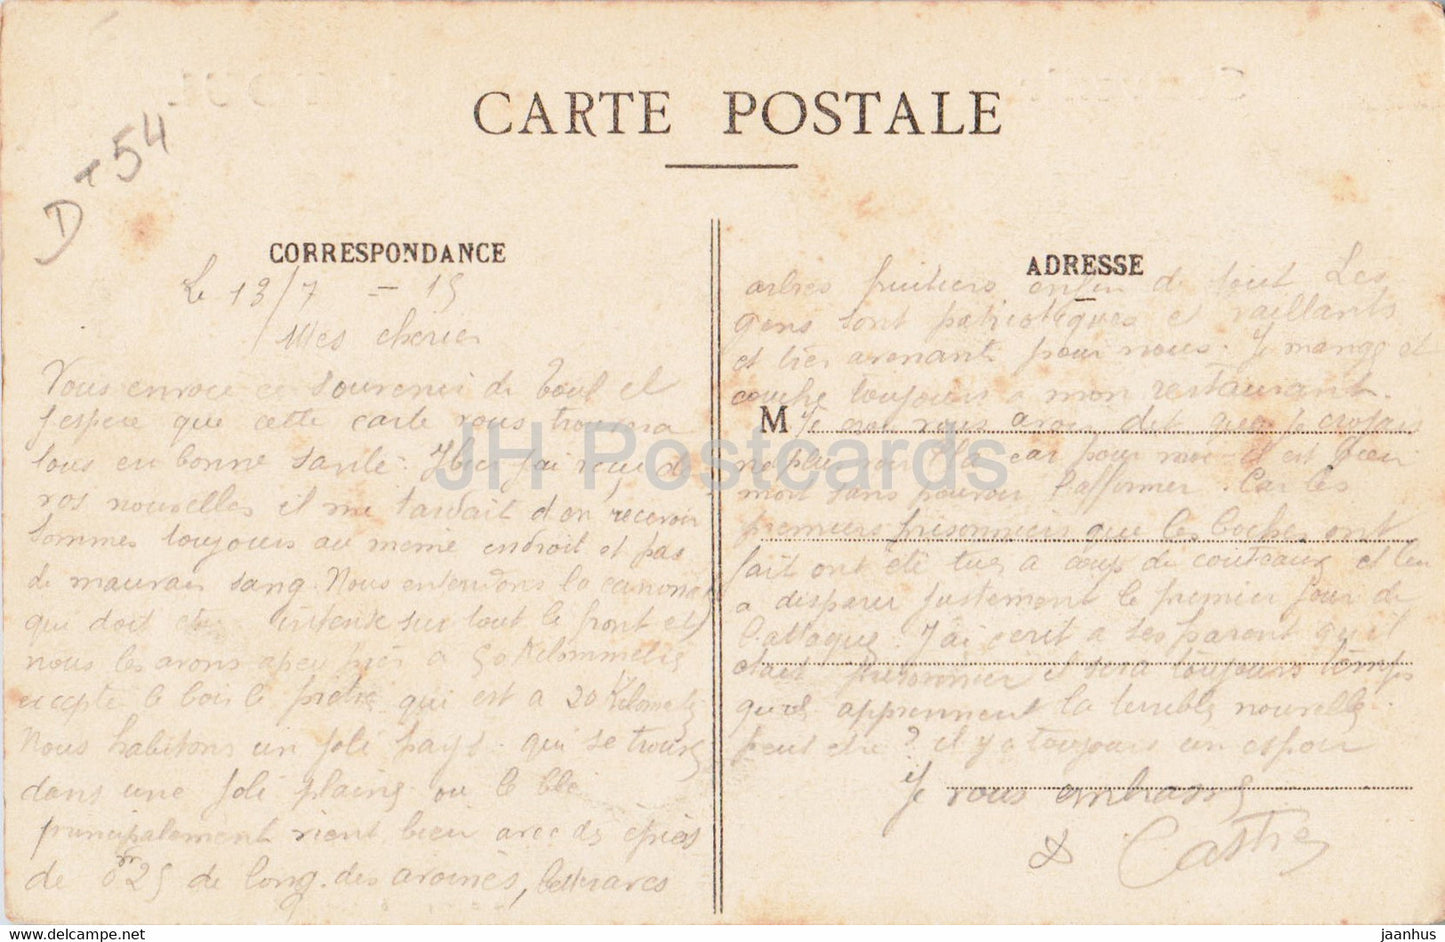 Souvenir de Toul - carte postale ancienne - France - occasion